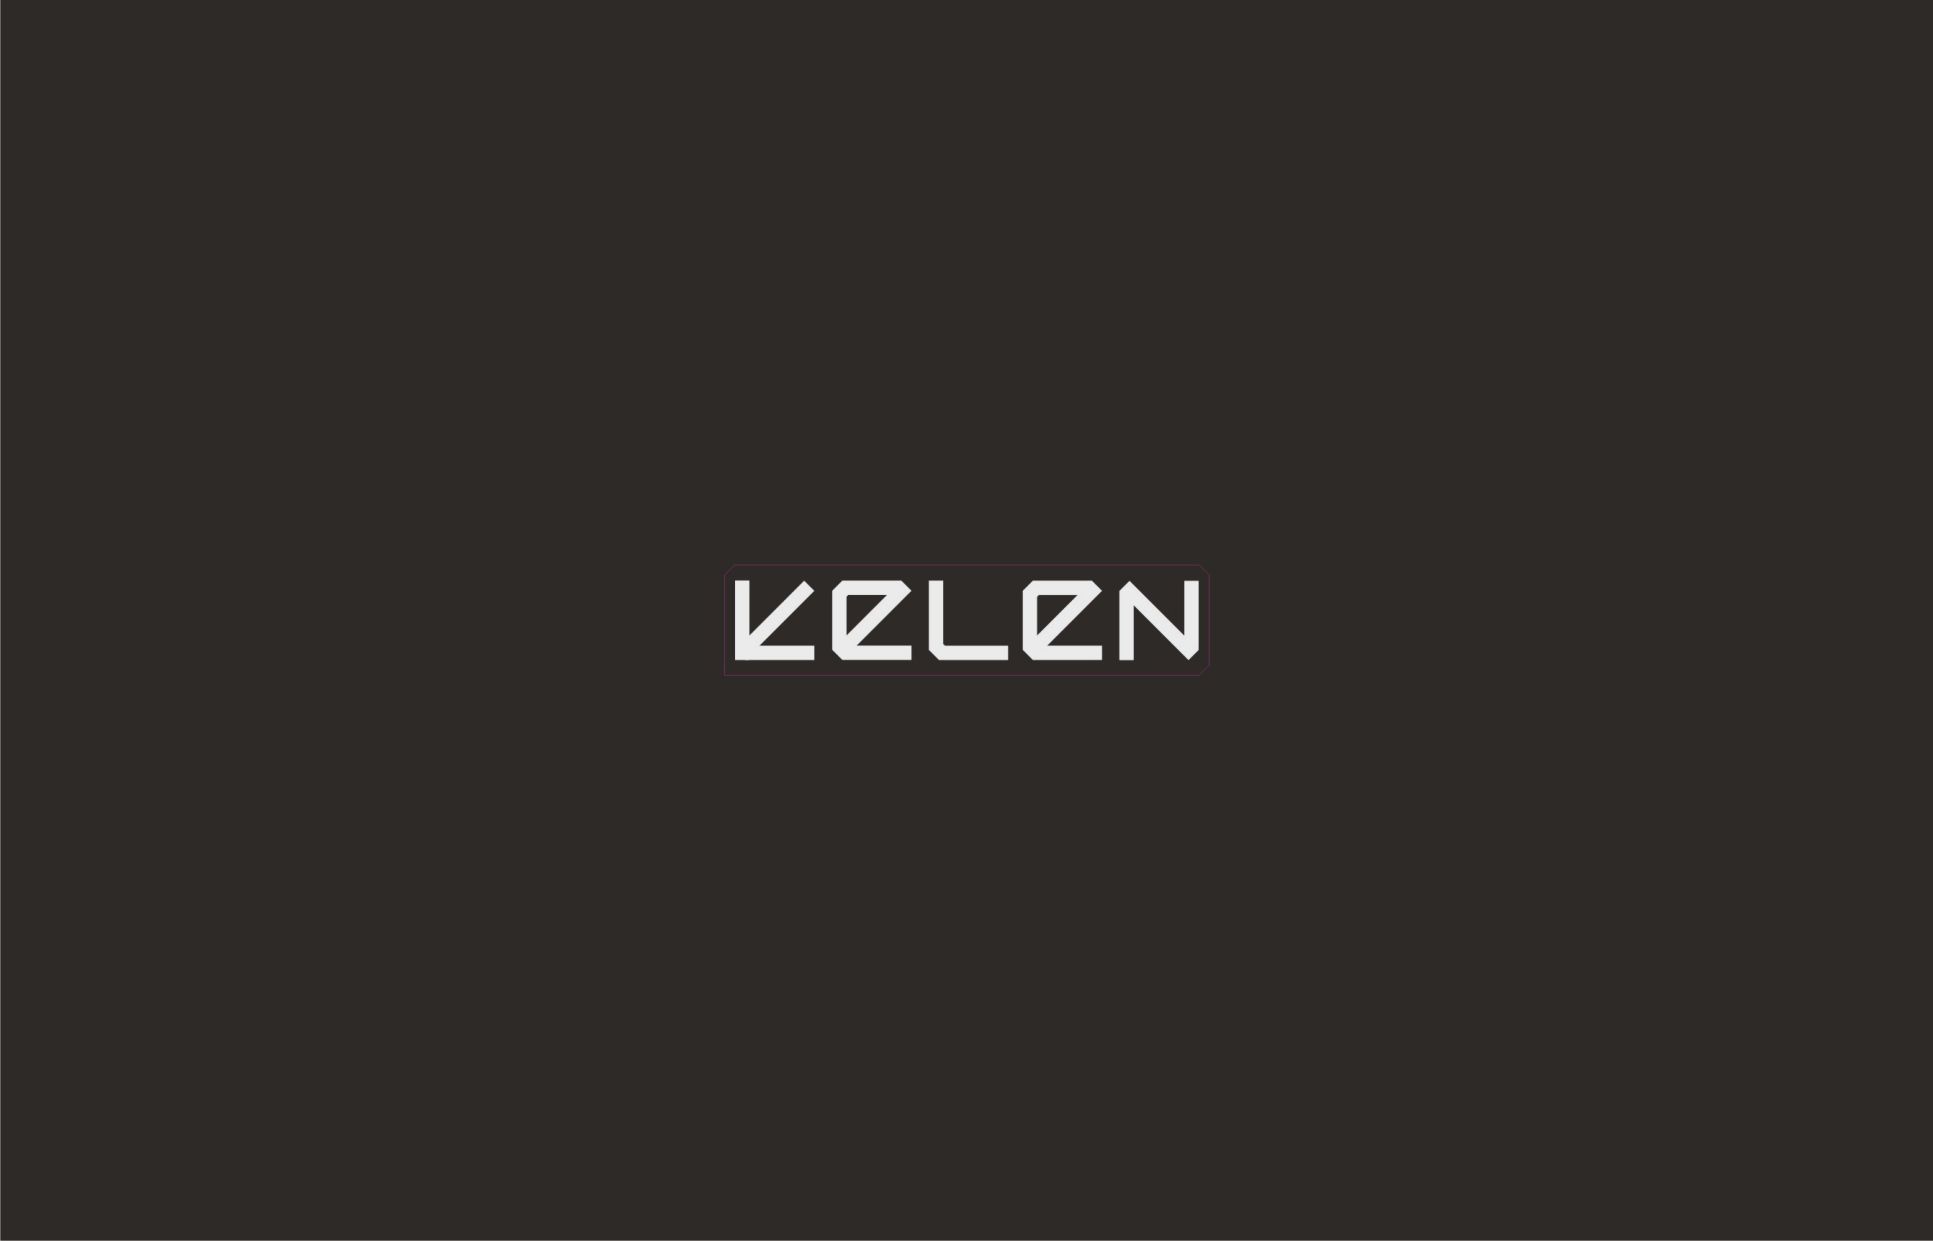 Логотип для KELEN - дизайнер 89638480888